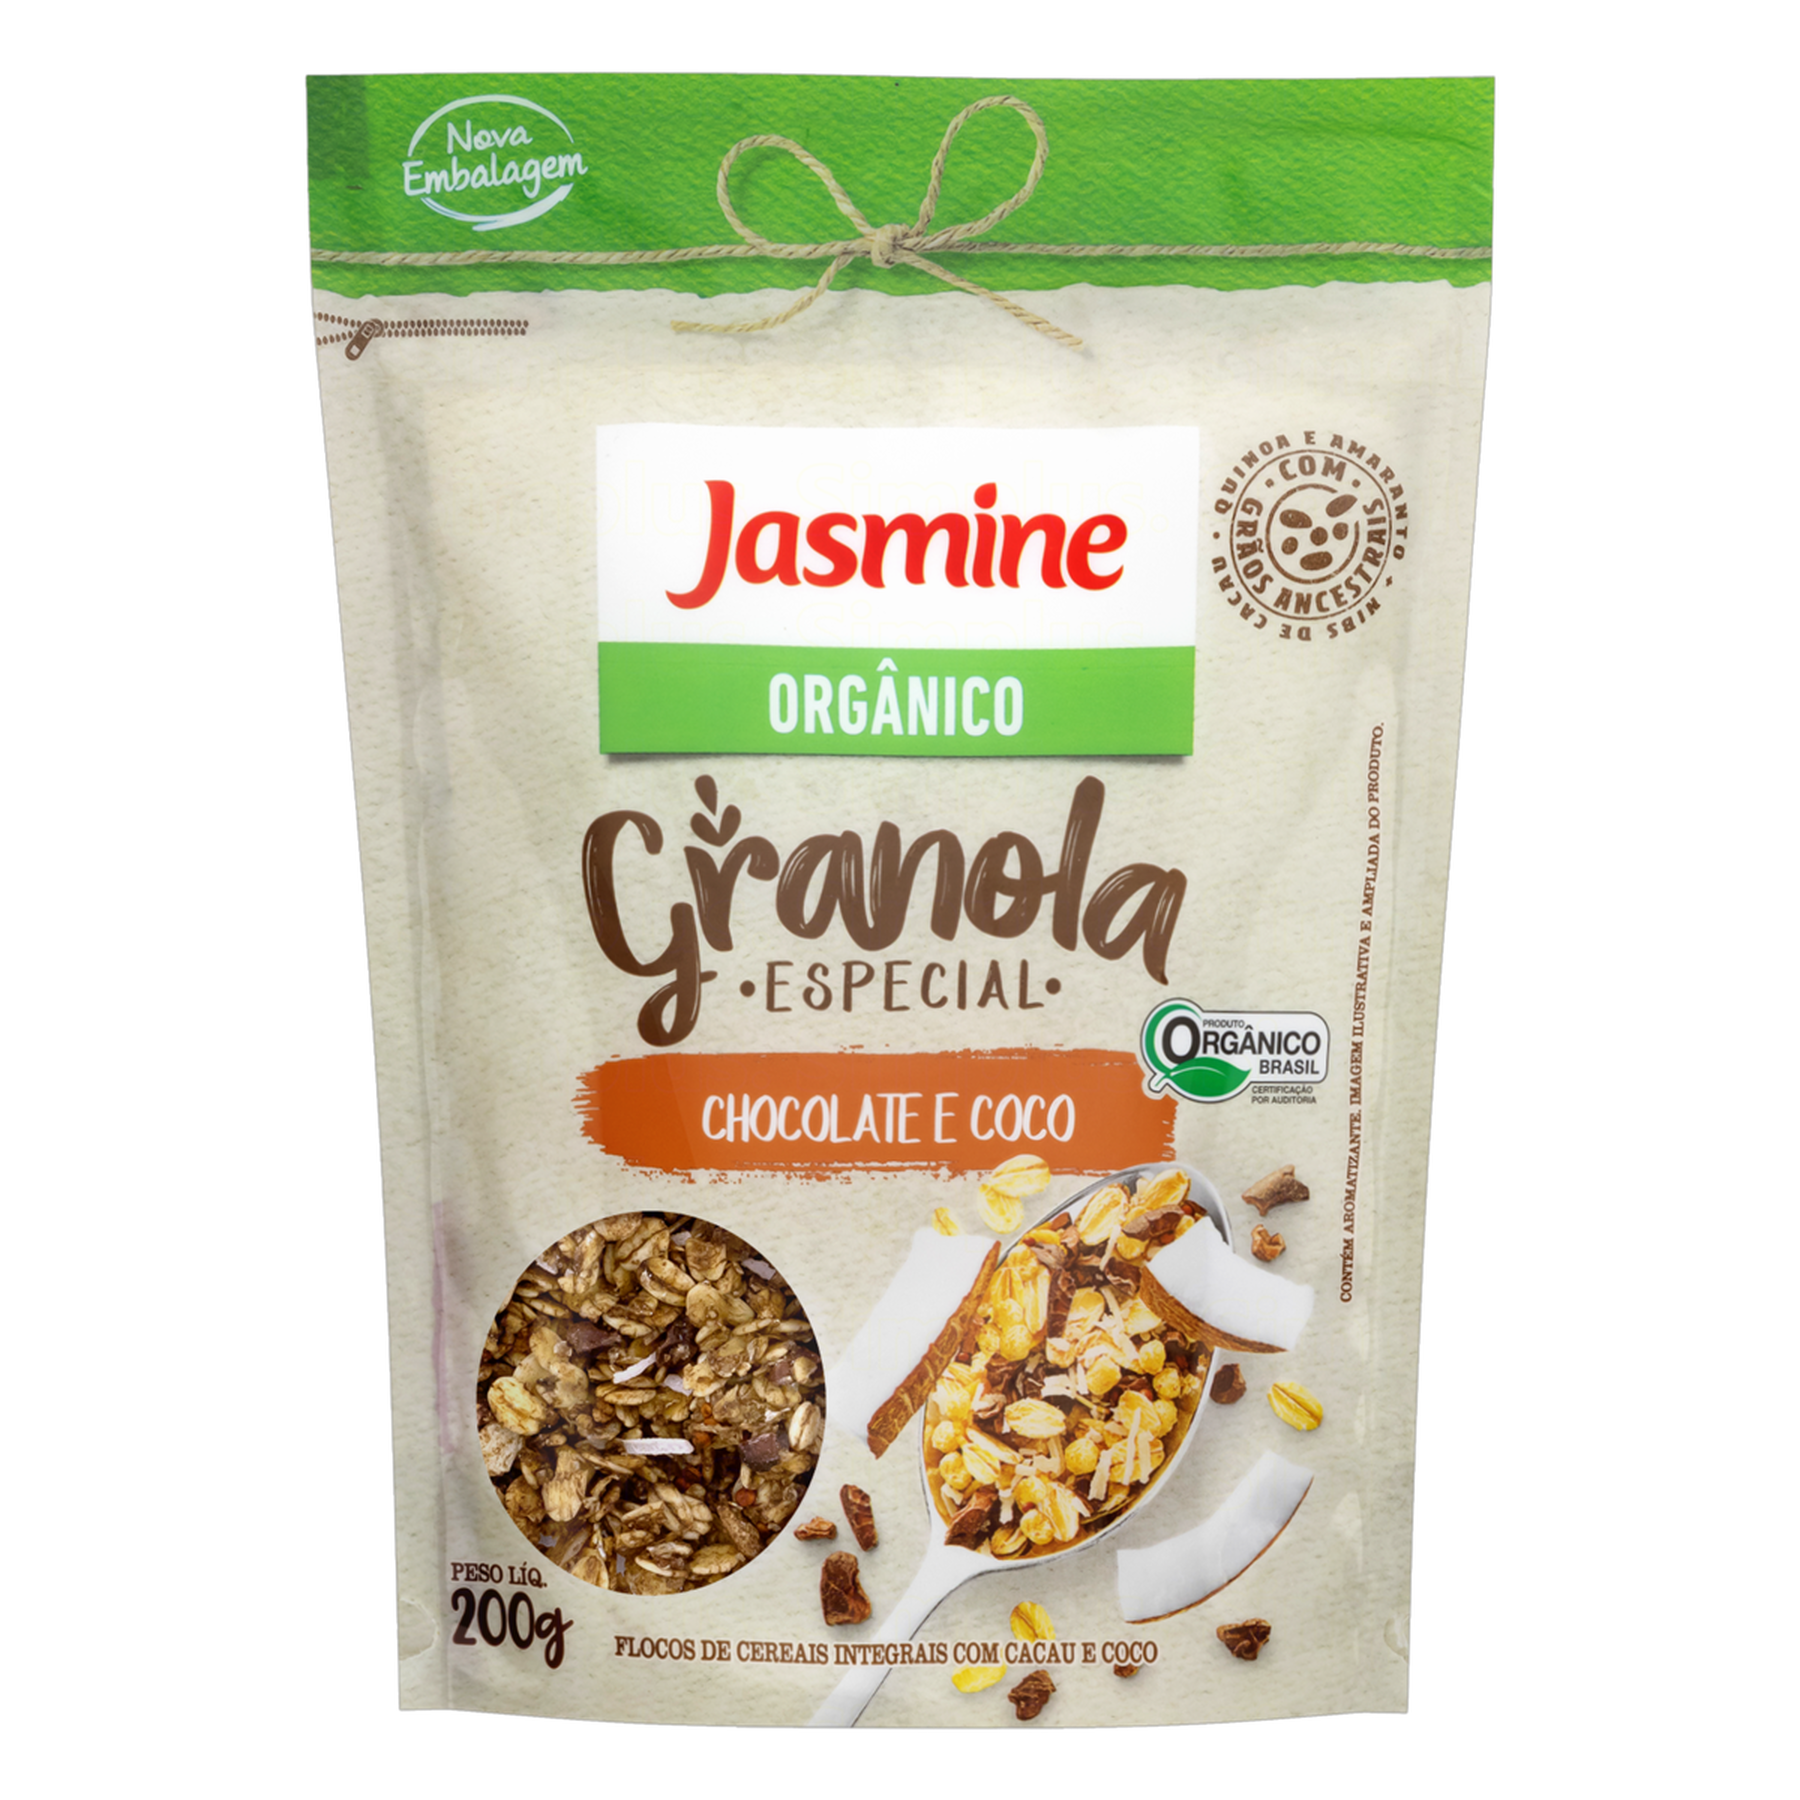 Granola Orgânica Chocolate e Coco Jasmine Especial Pouch 200g